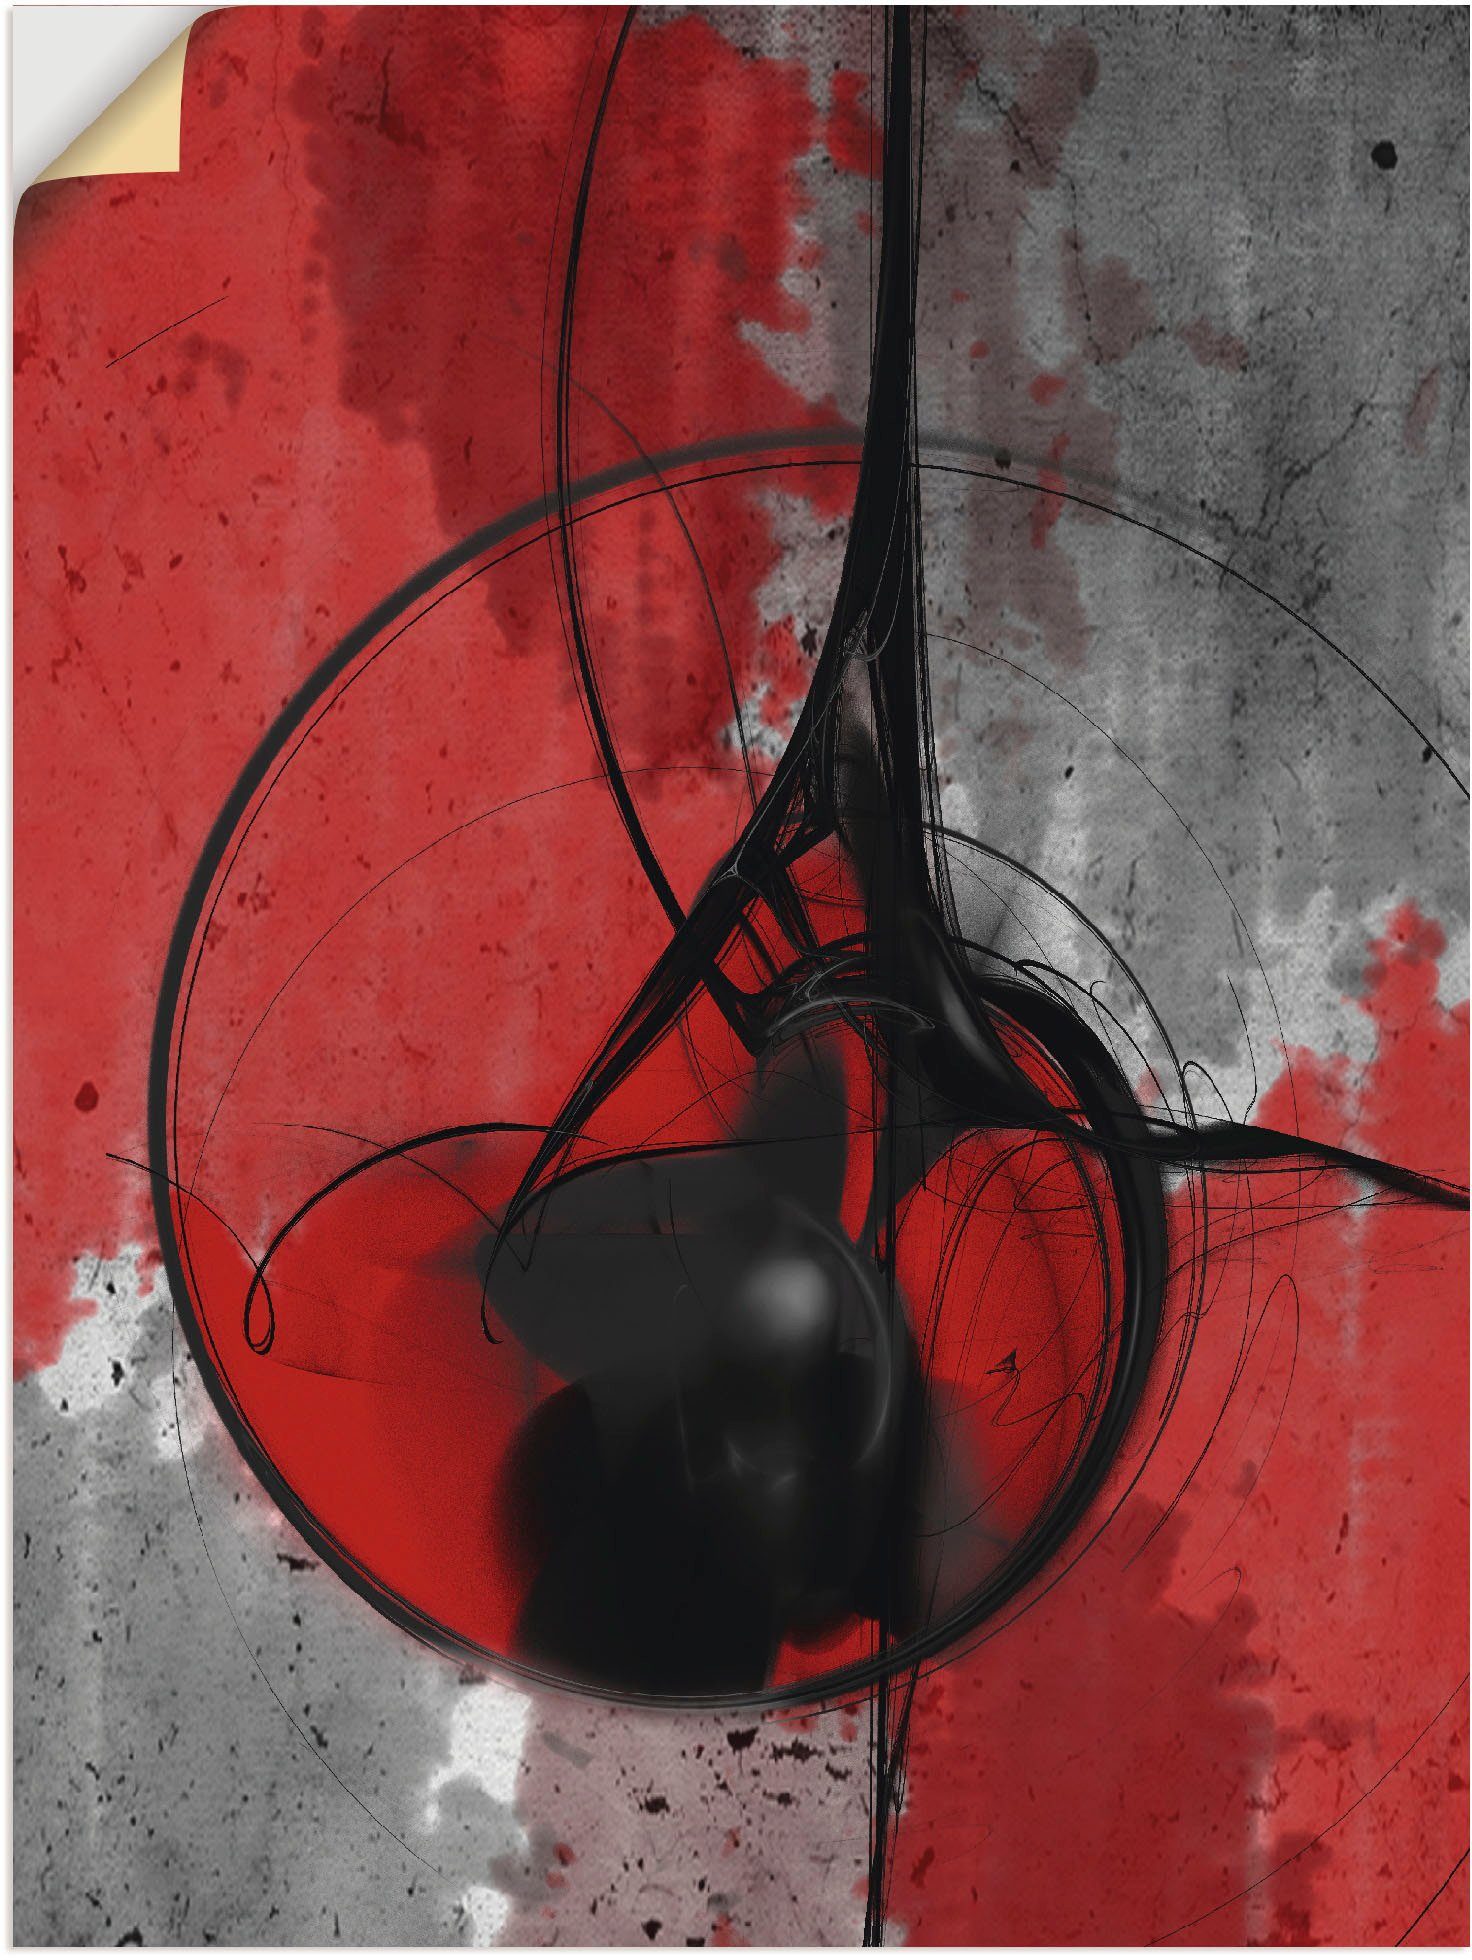 Artland Artprint Abstract in rood en zwart in vele afmetingen & productsoorten - artprint van aluminium / artprint voor buiten, artprint op linnen, poster, muursticker / wandfolie